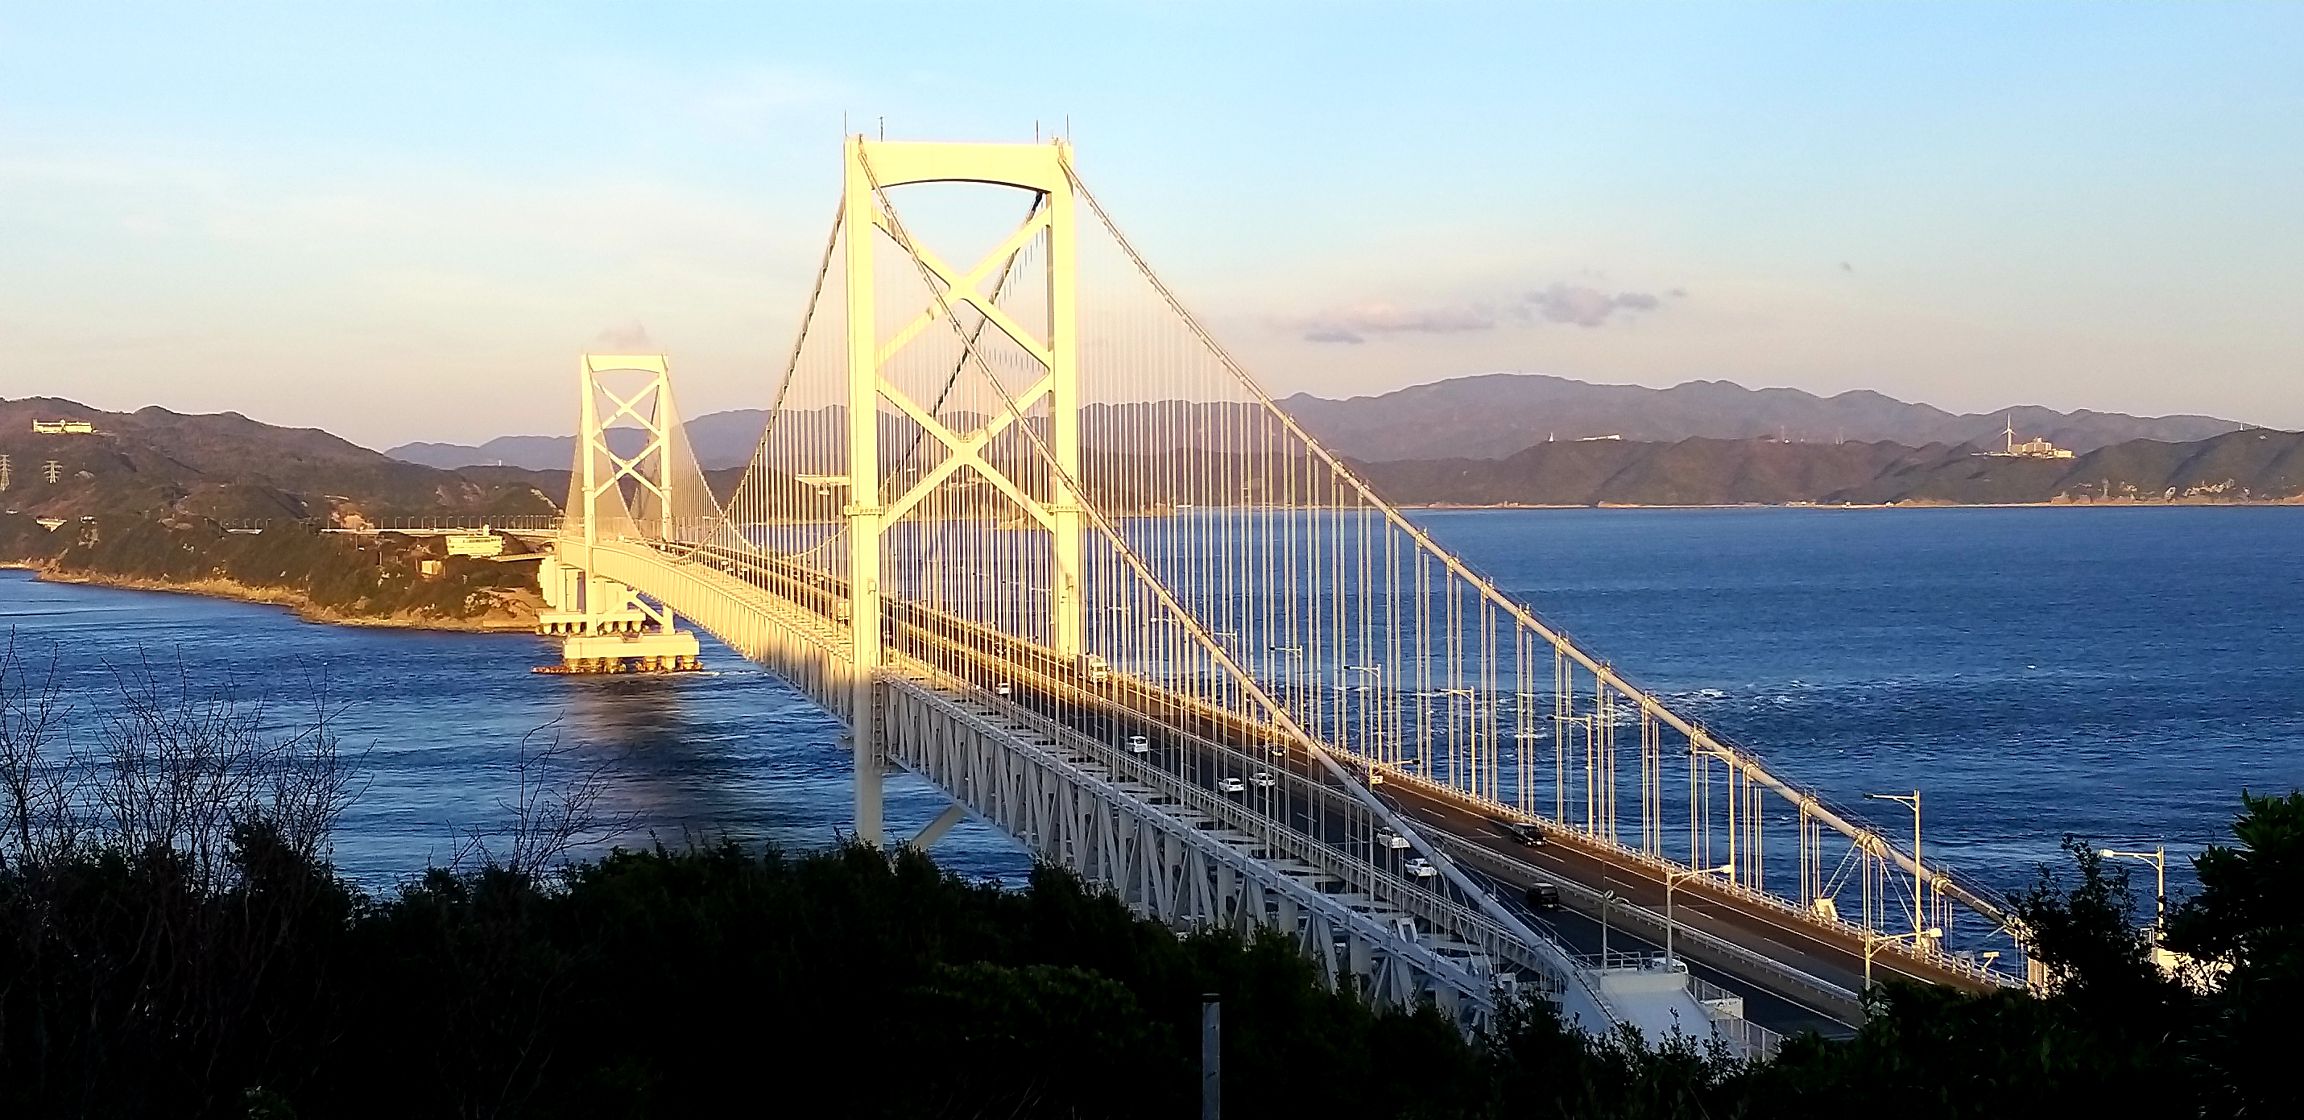 位於日本四国德岛之大鸣门桥，是連接四国與本州之重要通道之一，大橋横貫於濑户內海之上，宏偉壯观，在嗚门